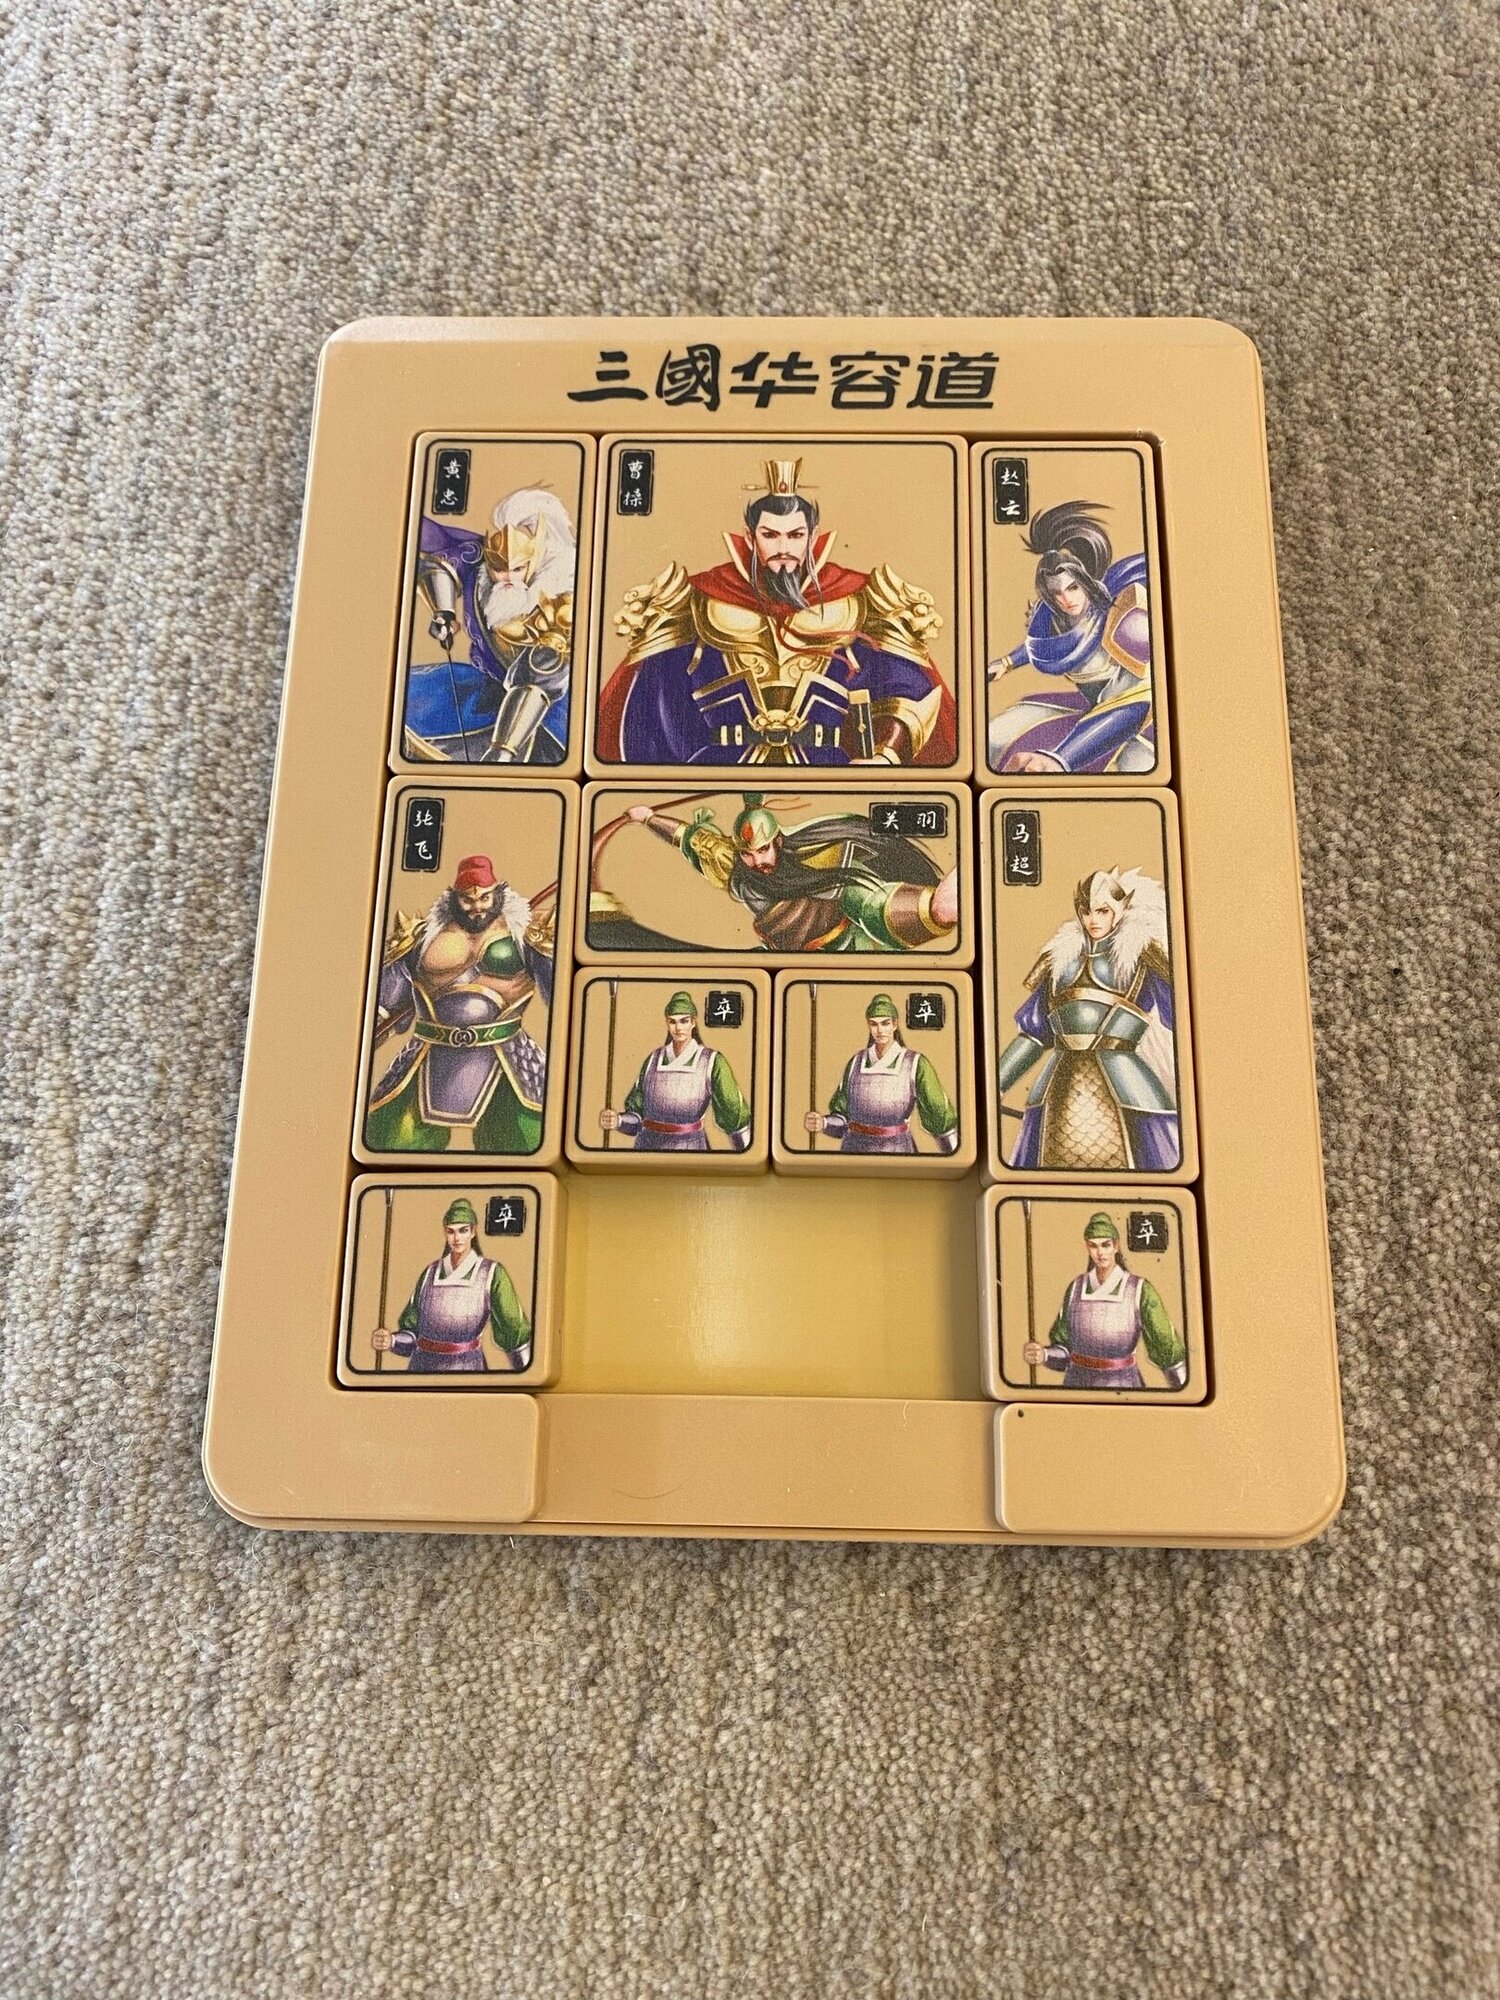 Настольная китайская игра Хуажундао, магнитный набор " Троецарствие ", доска и плитки с изображениями.